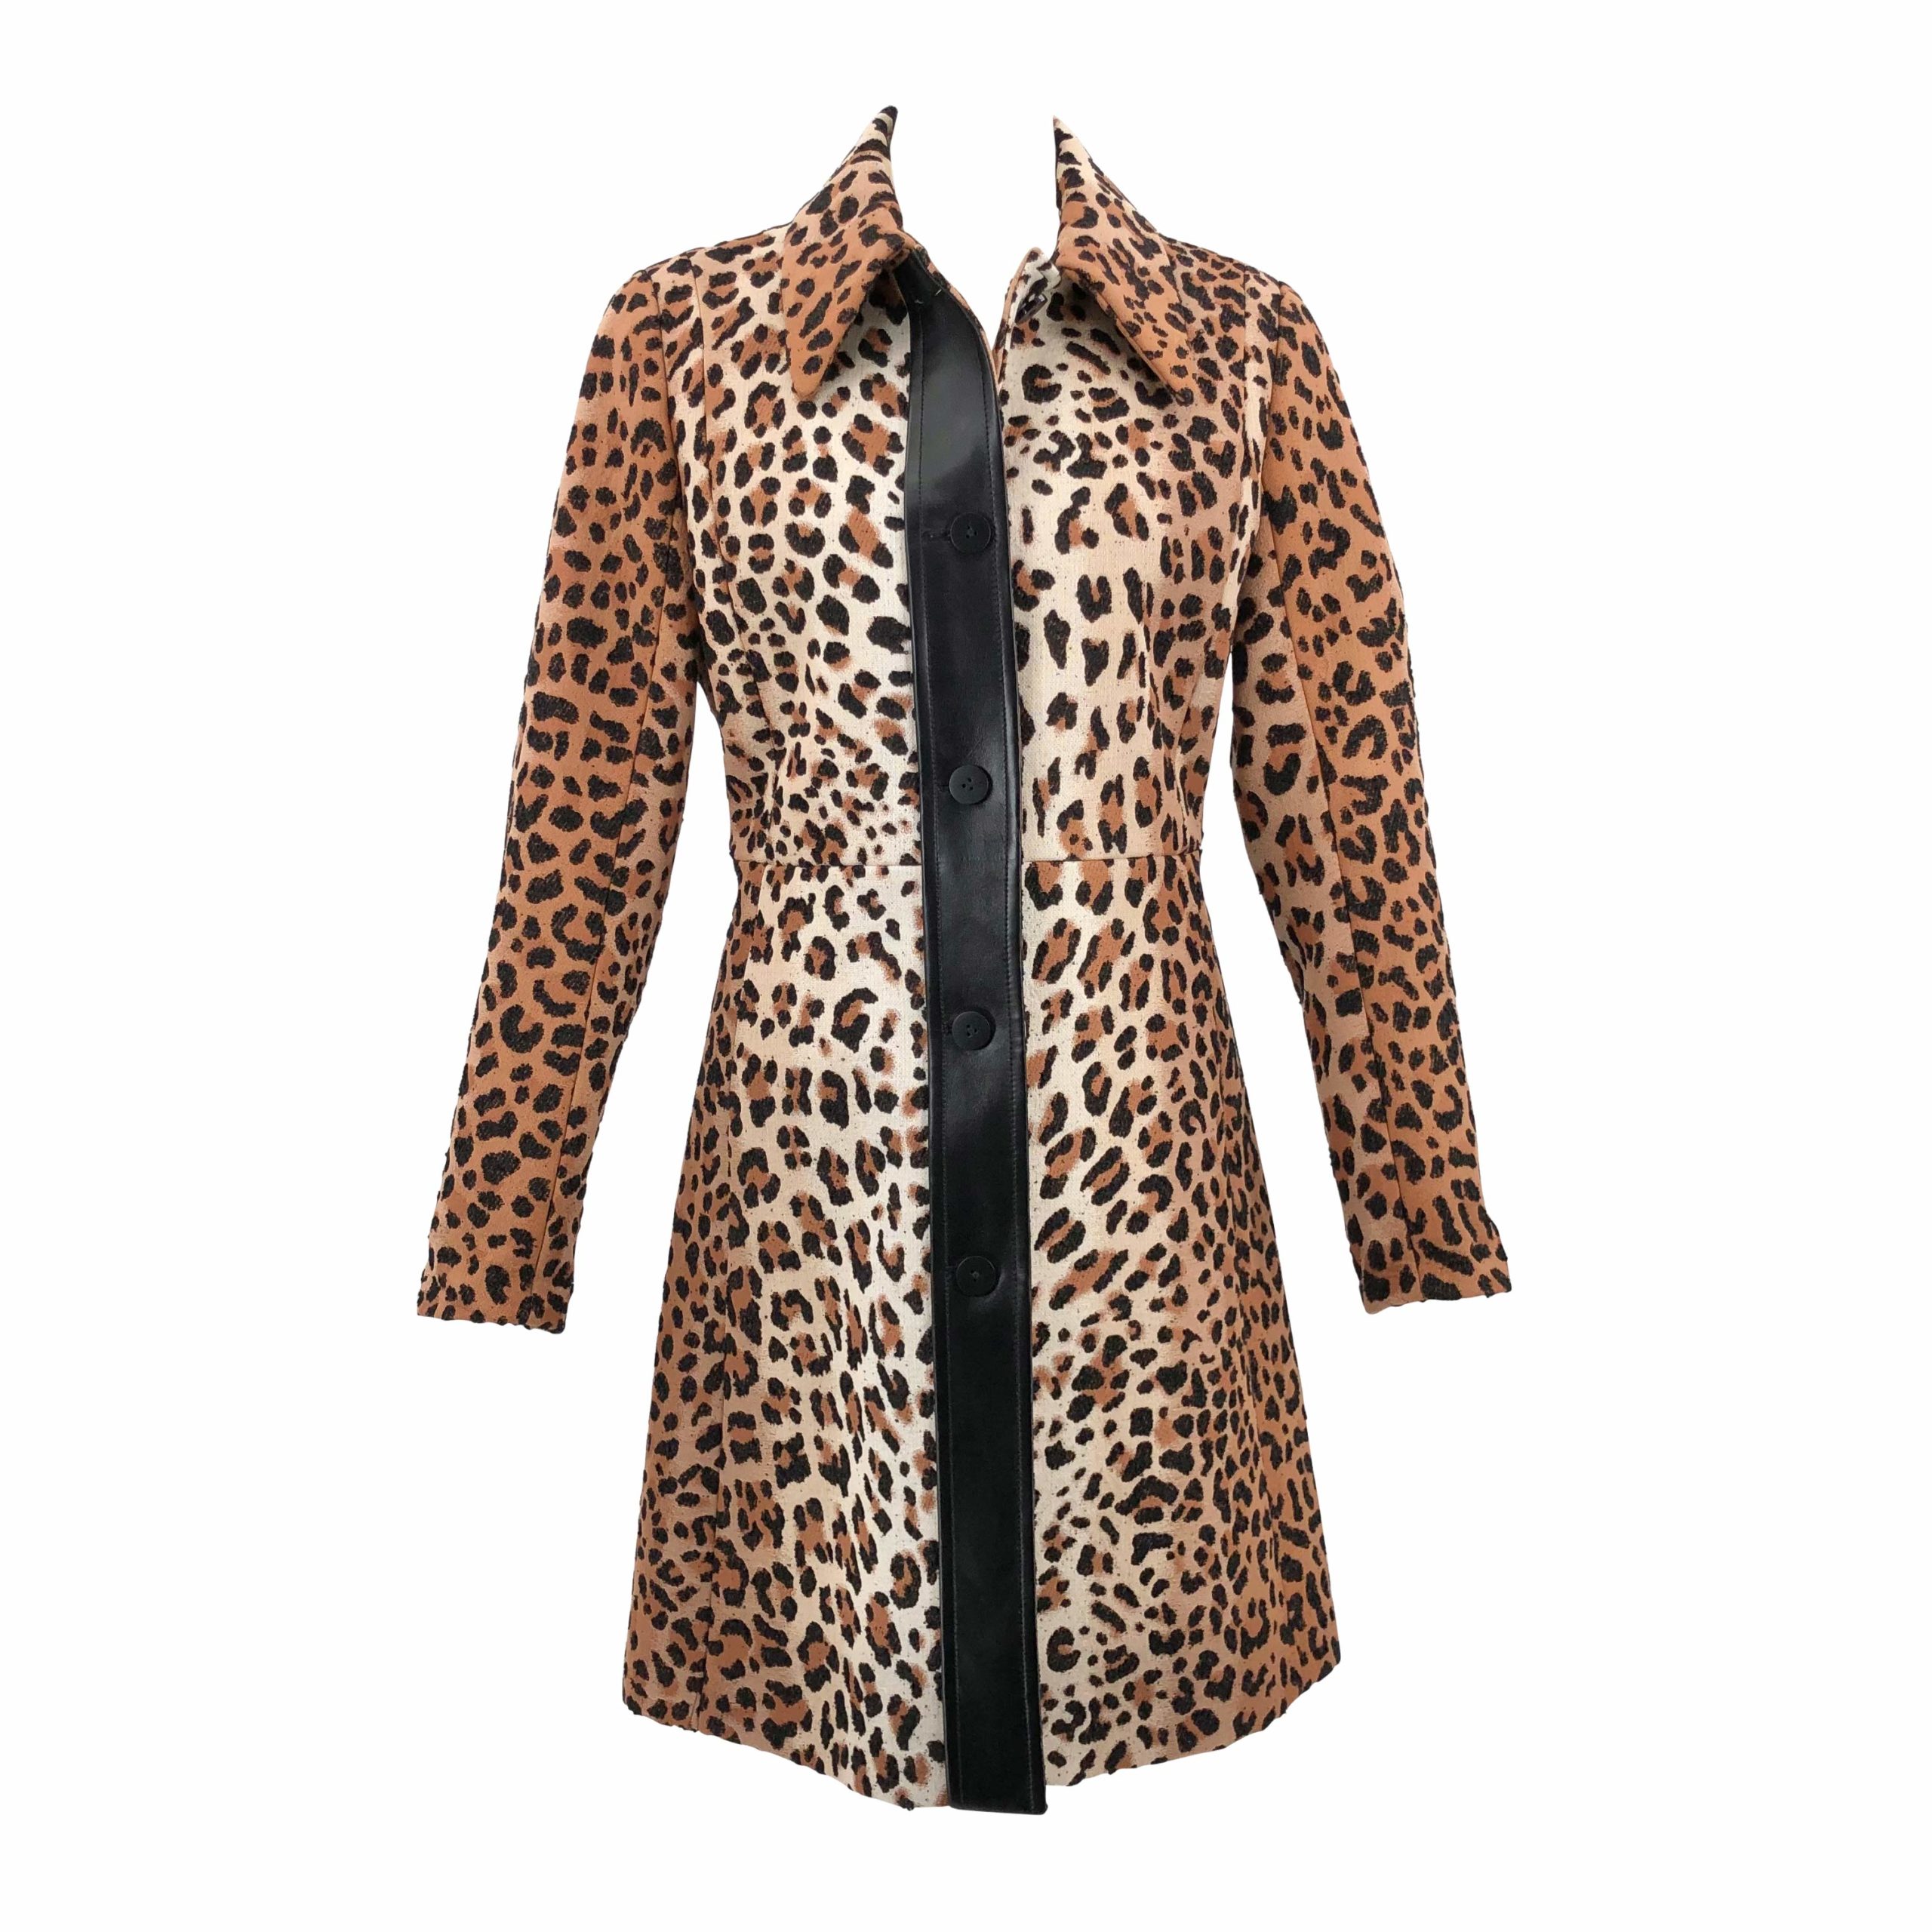 Asha Terne: Hvid bluse med leopardprintsområde og sort/gulternet nederdel  fra Louis Vuitton